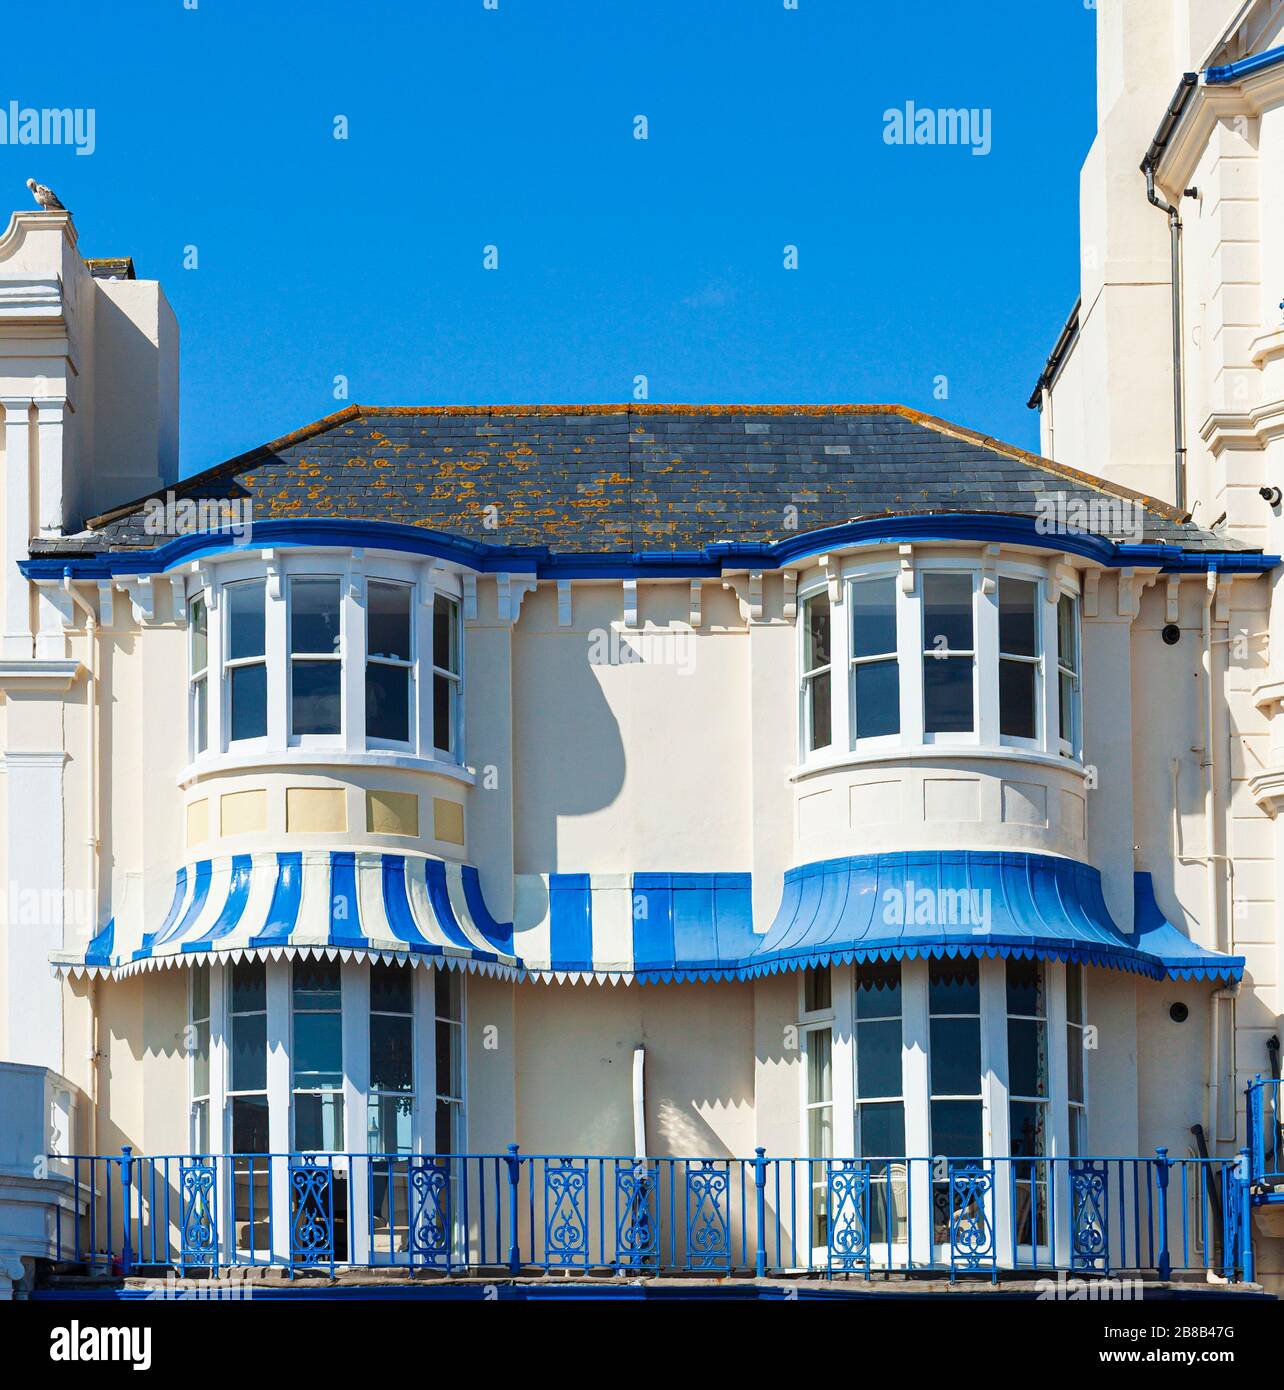 Regency Villa et Regency House. Maisons en terrasses victoriennes, Marine Parade, Eastbourne, East Sussex, Angleterre, Royaume-Uni. Banque D'Images